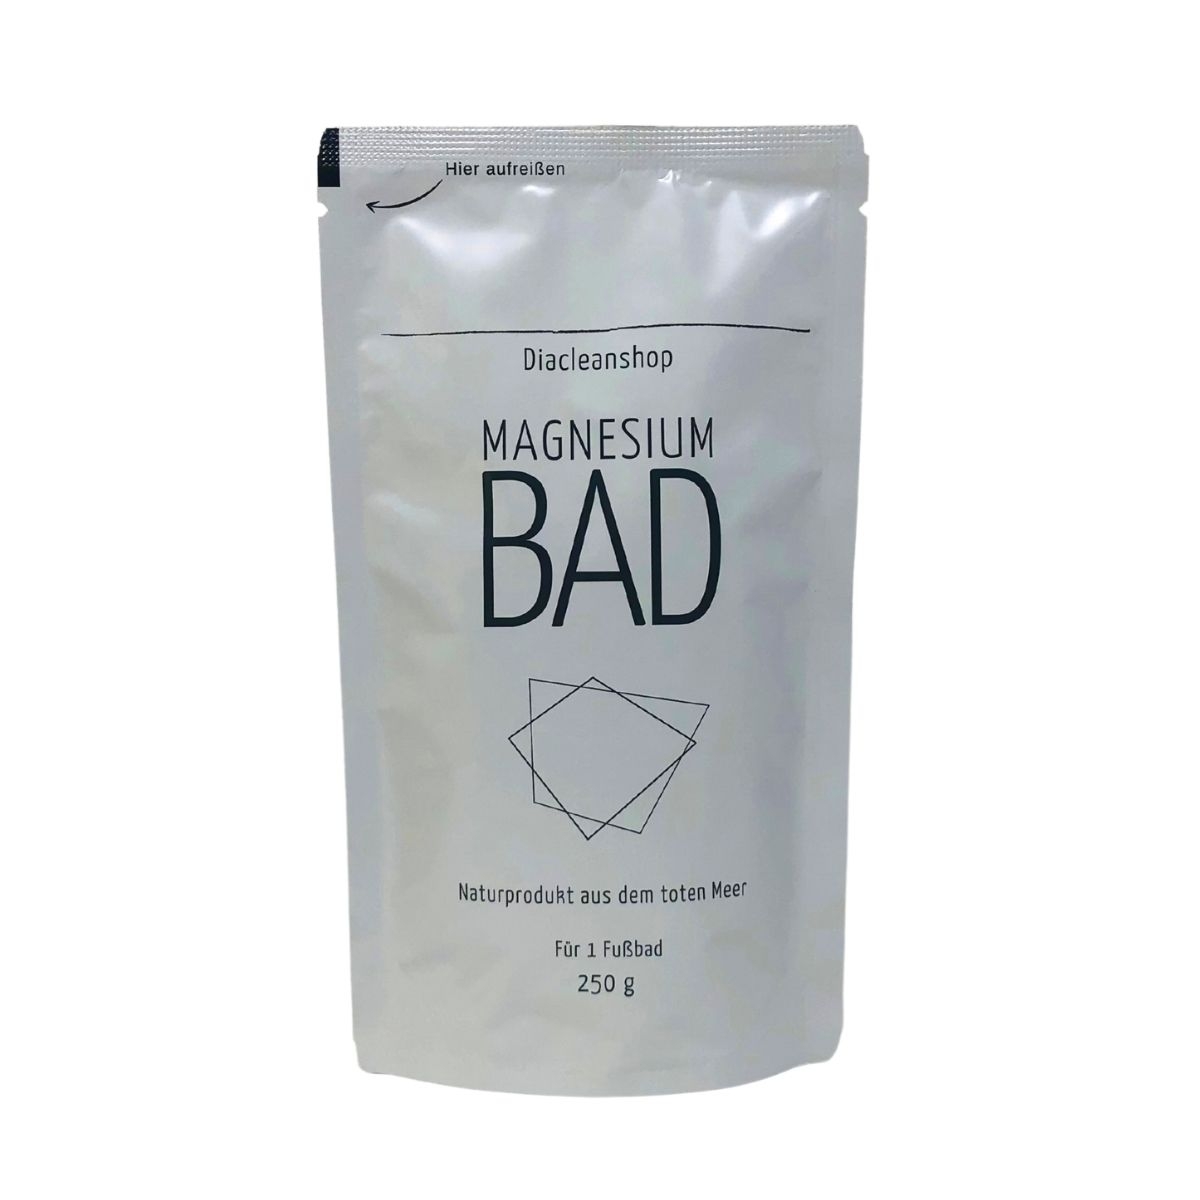 Magnesiumbad aus Magnesium Flakes (250g) für ein Fußbad im praktischen Tütchen